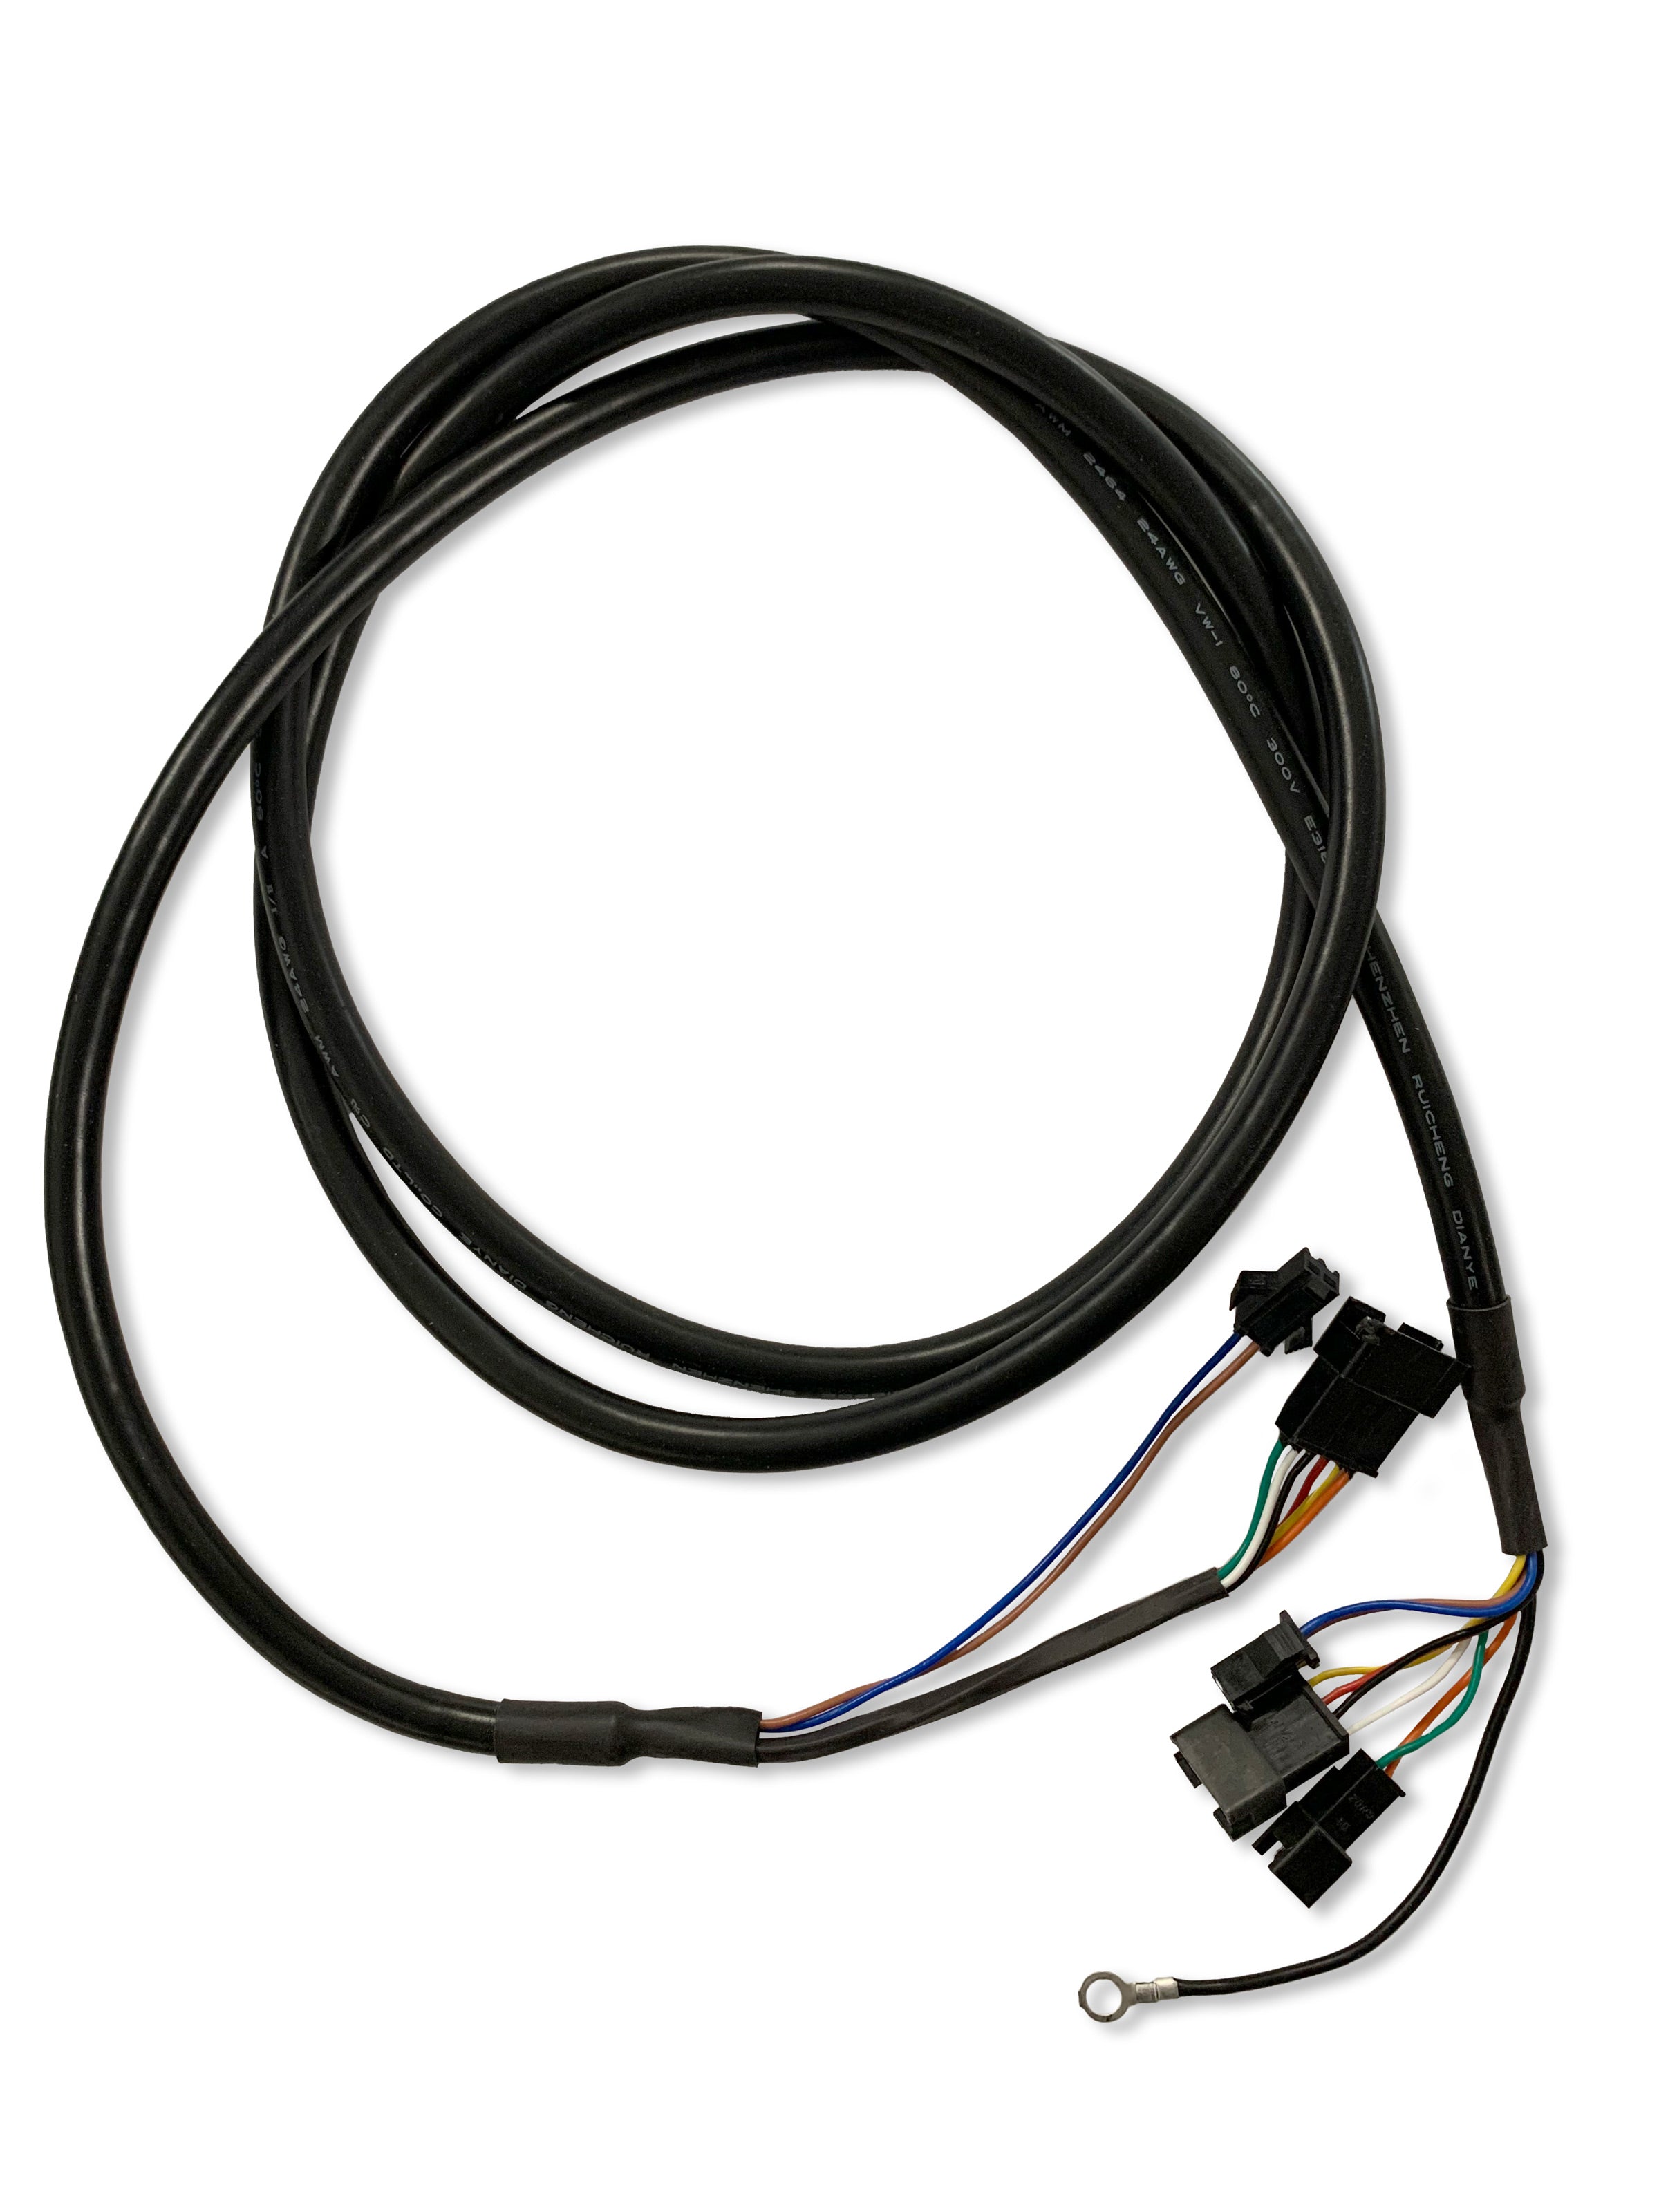 Display Anschlusskabel für ePF-1 & ePF-1 PRO (Offiziel).